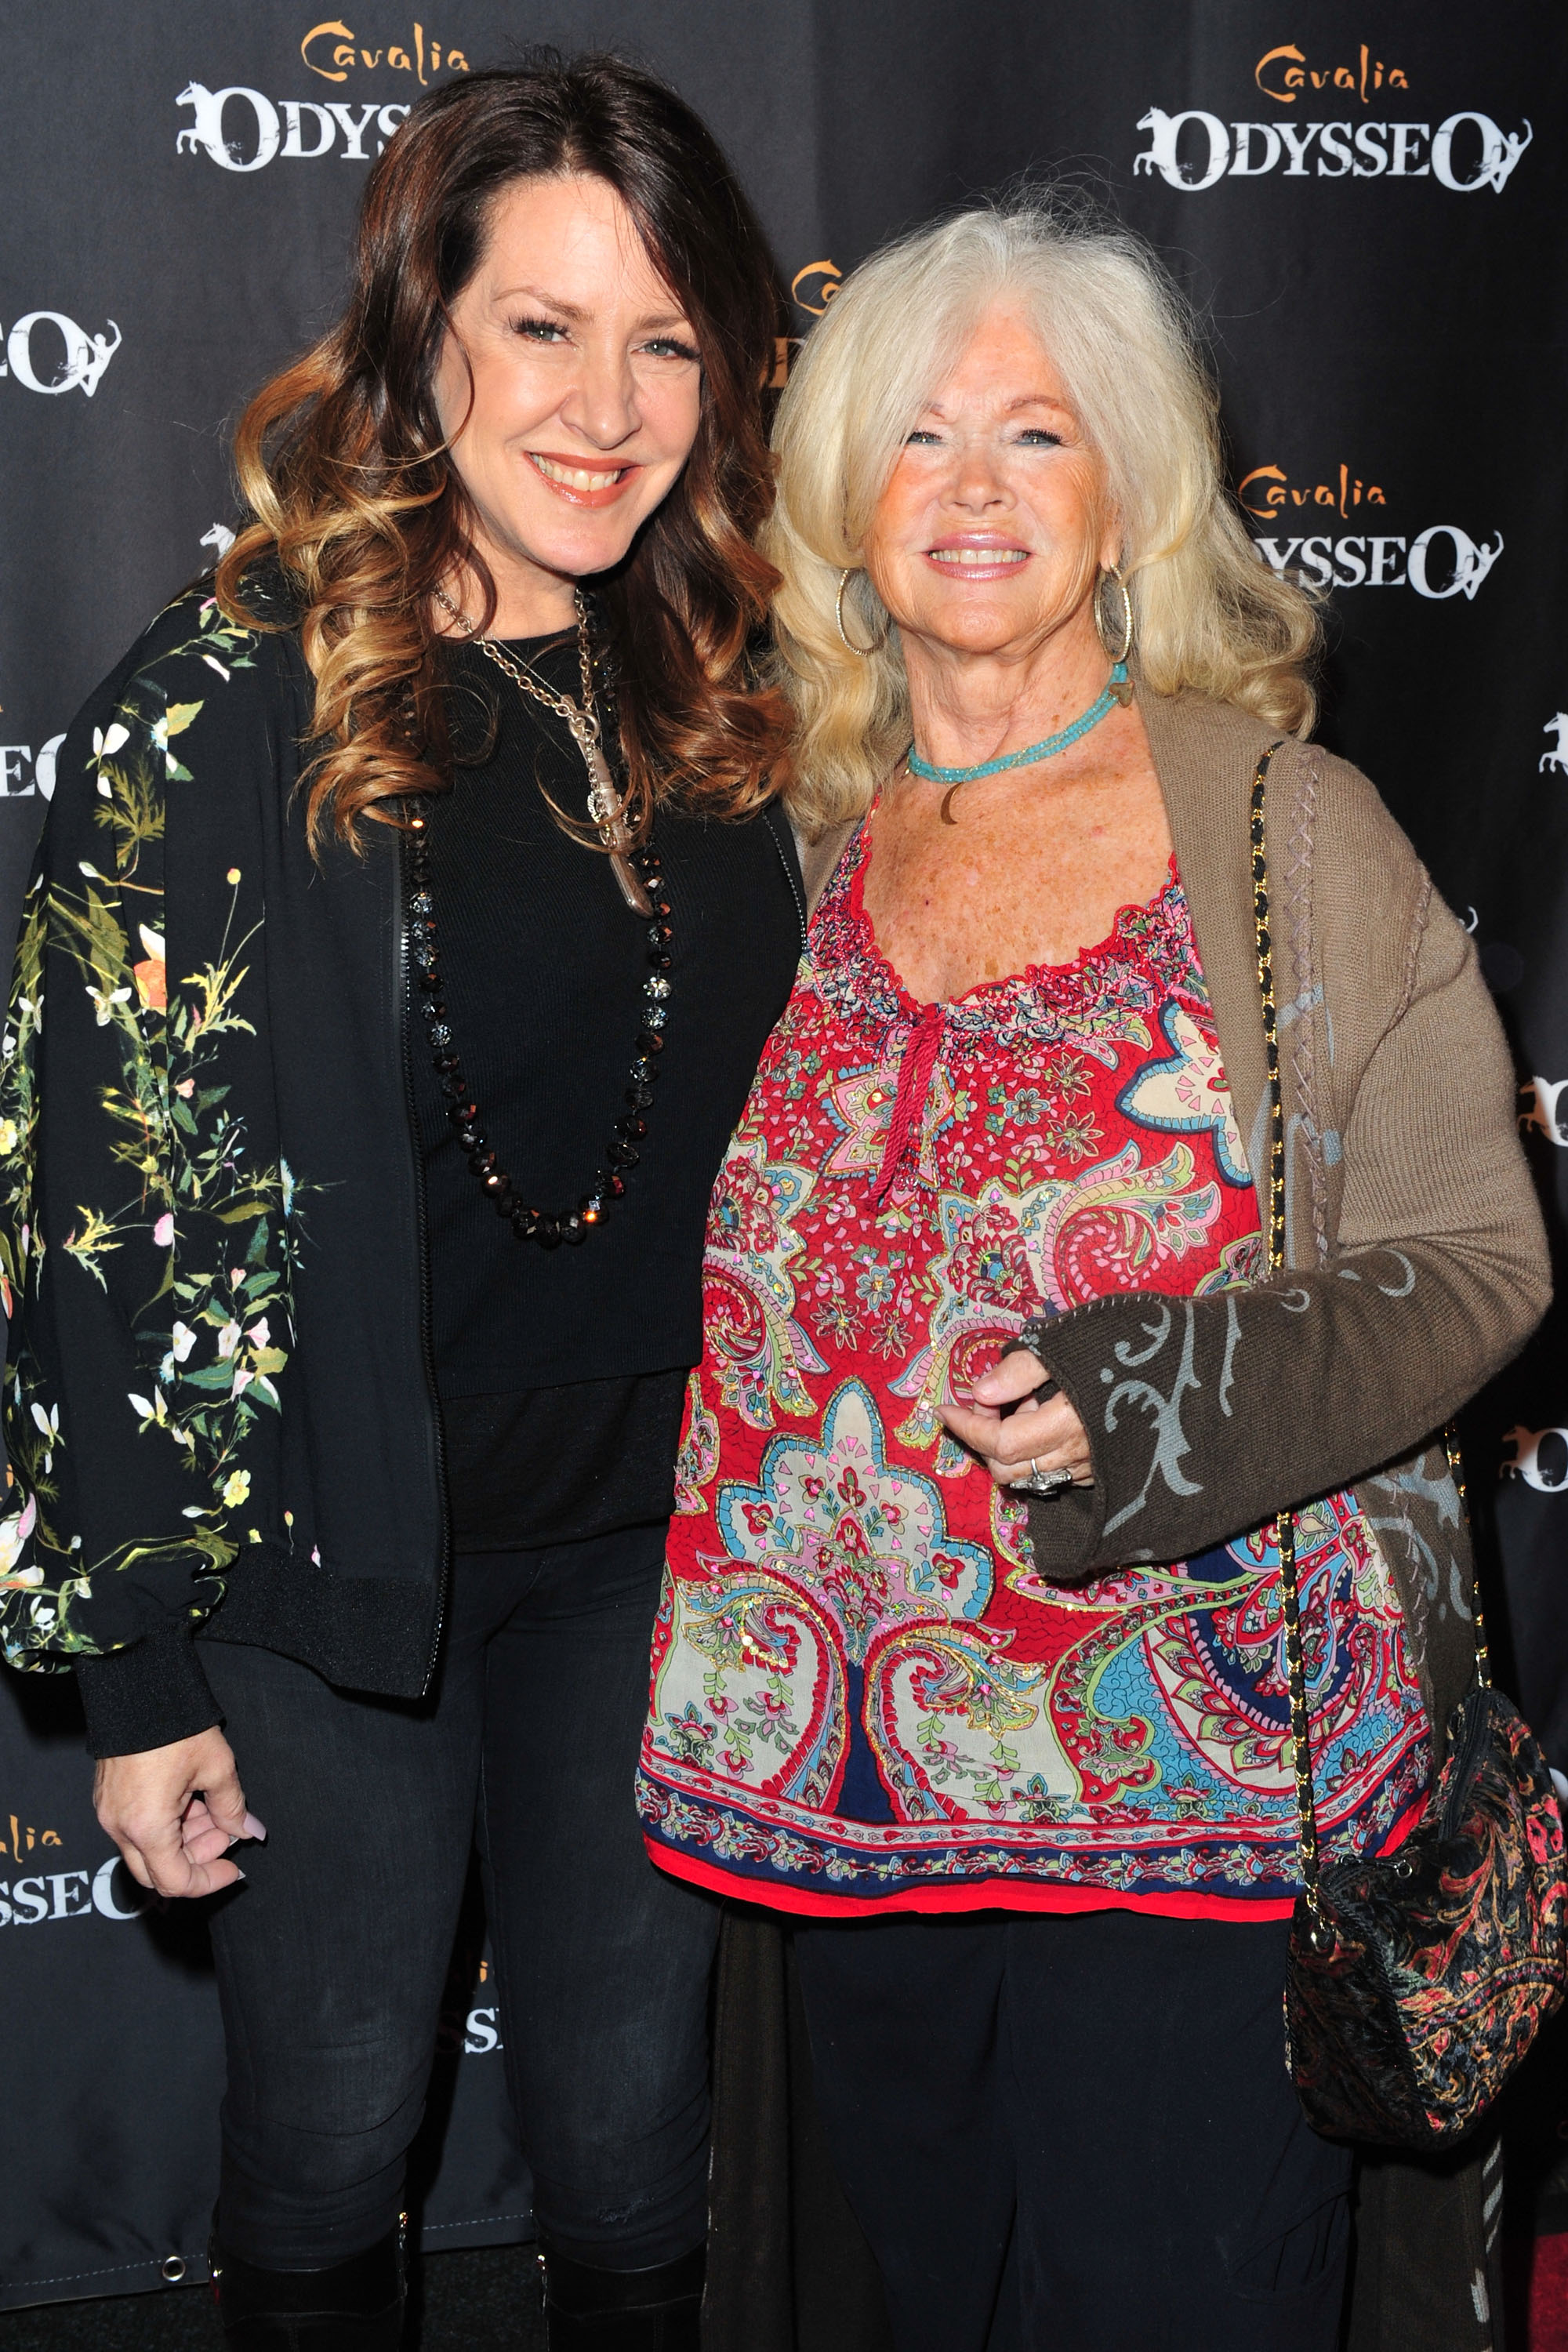 L'actrice Joely Fisher et sa mère Connie Stevens arrivent à l'événement de la première de "Odysseo By Cavalia" ; le 19 novembre 2016 à Irvine, Californie | Source : Getty Images